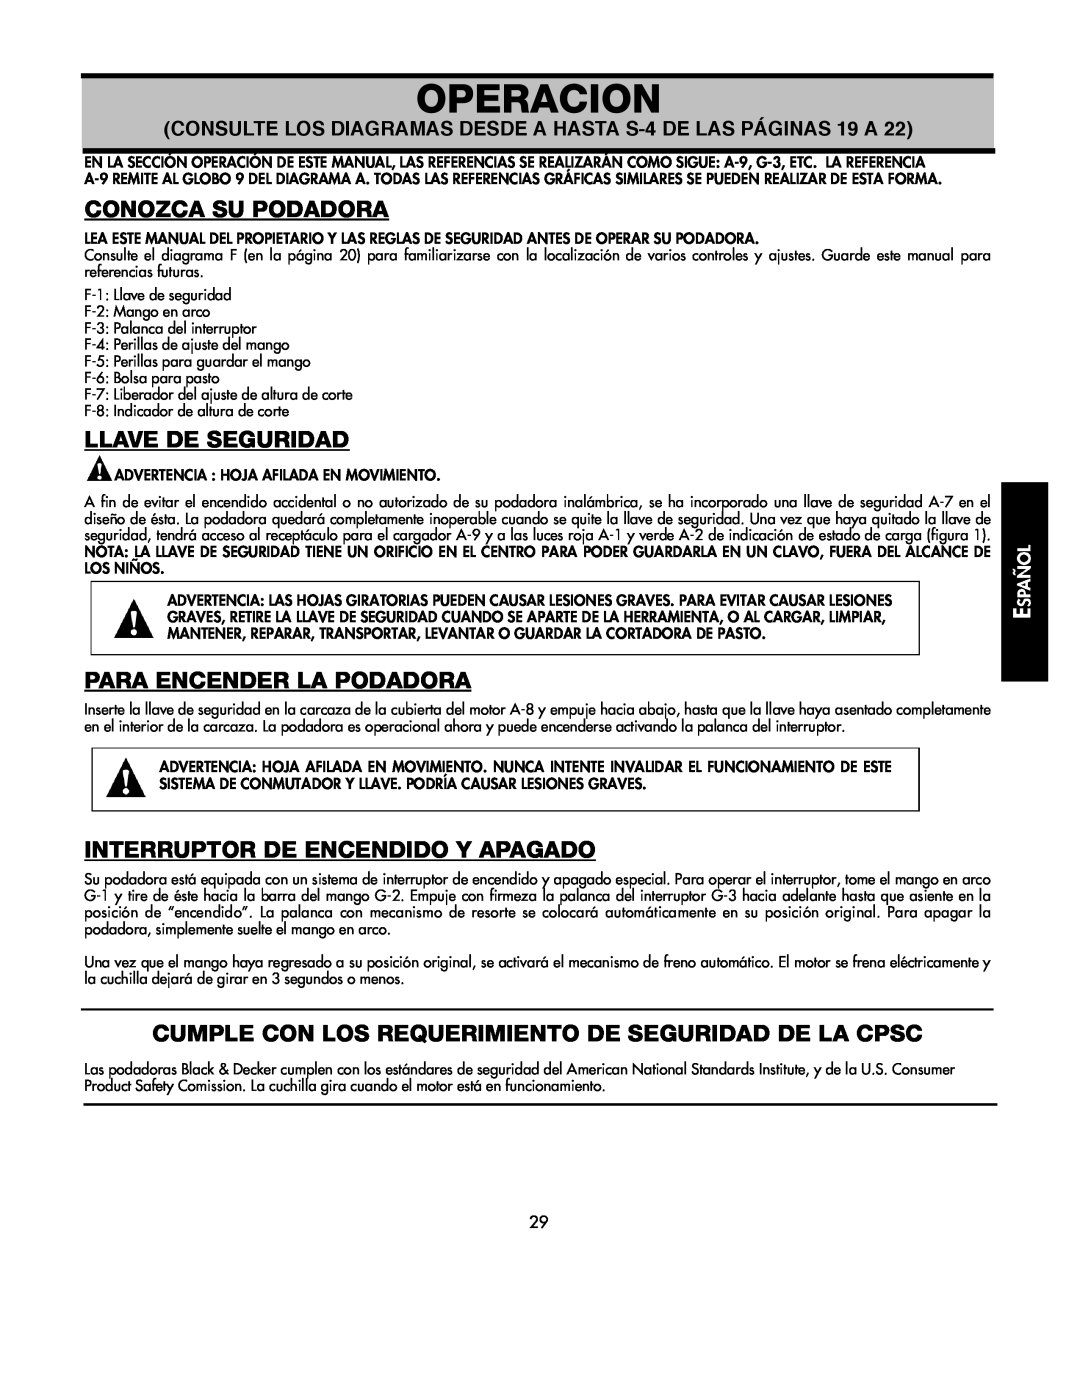 Black & Decker 598968-00 instruction manual Operacion, Conozca Su Podadora, Llave De Seguridad, Para Encender La Podadora 